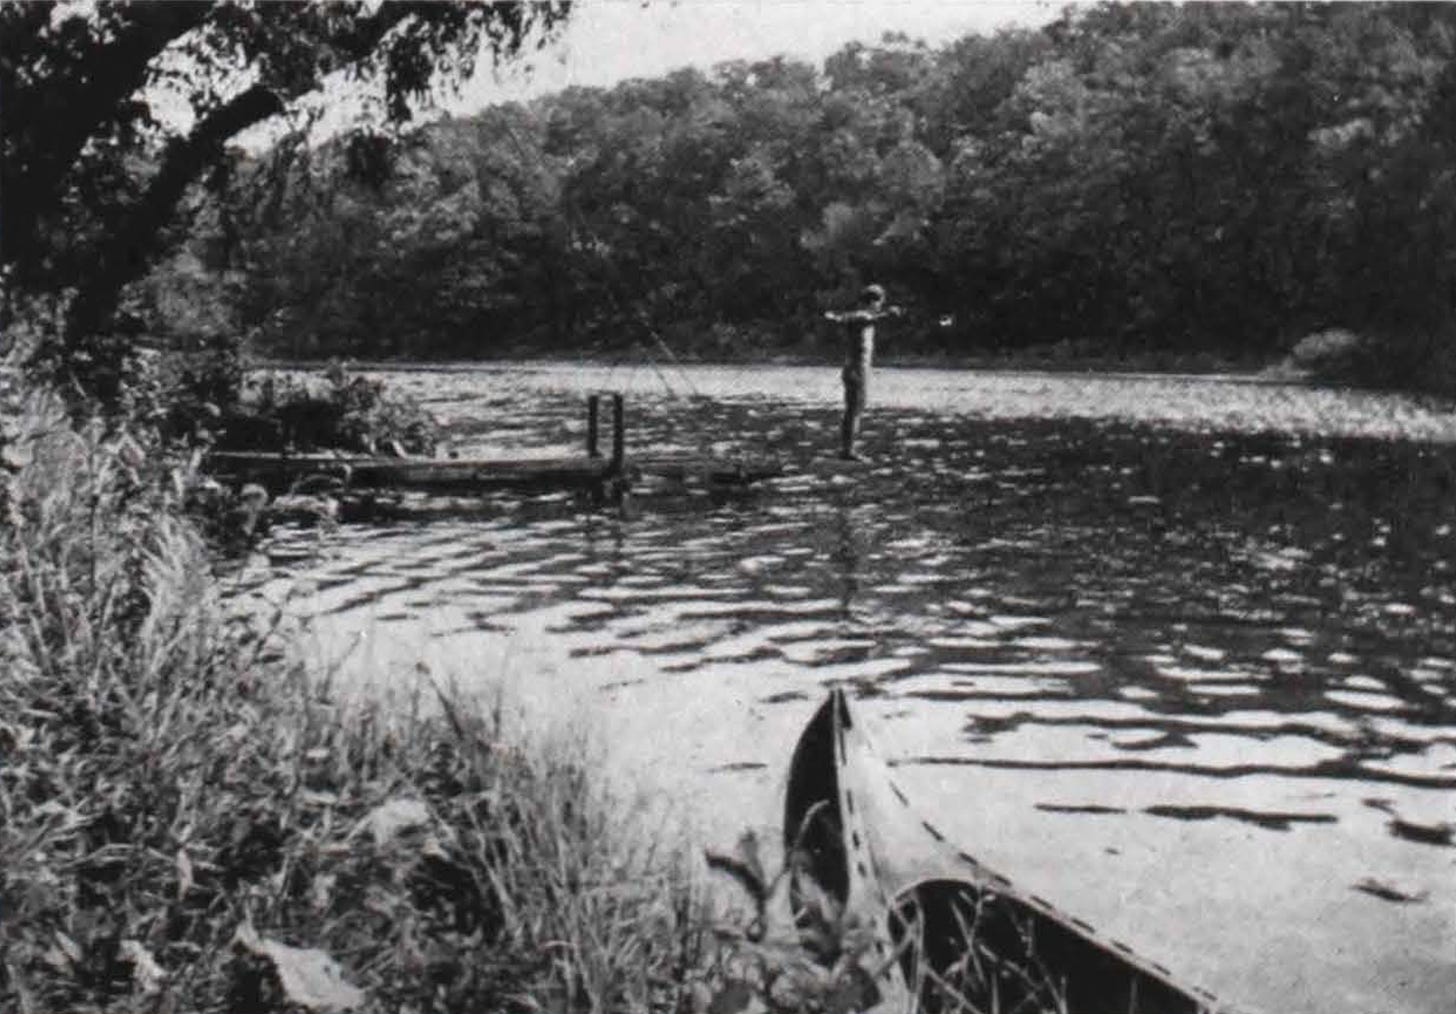 Sager's Lake. The Nudist, Nov. 1936